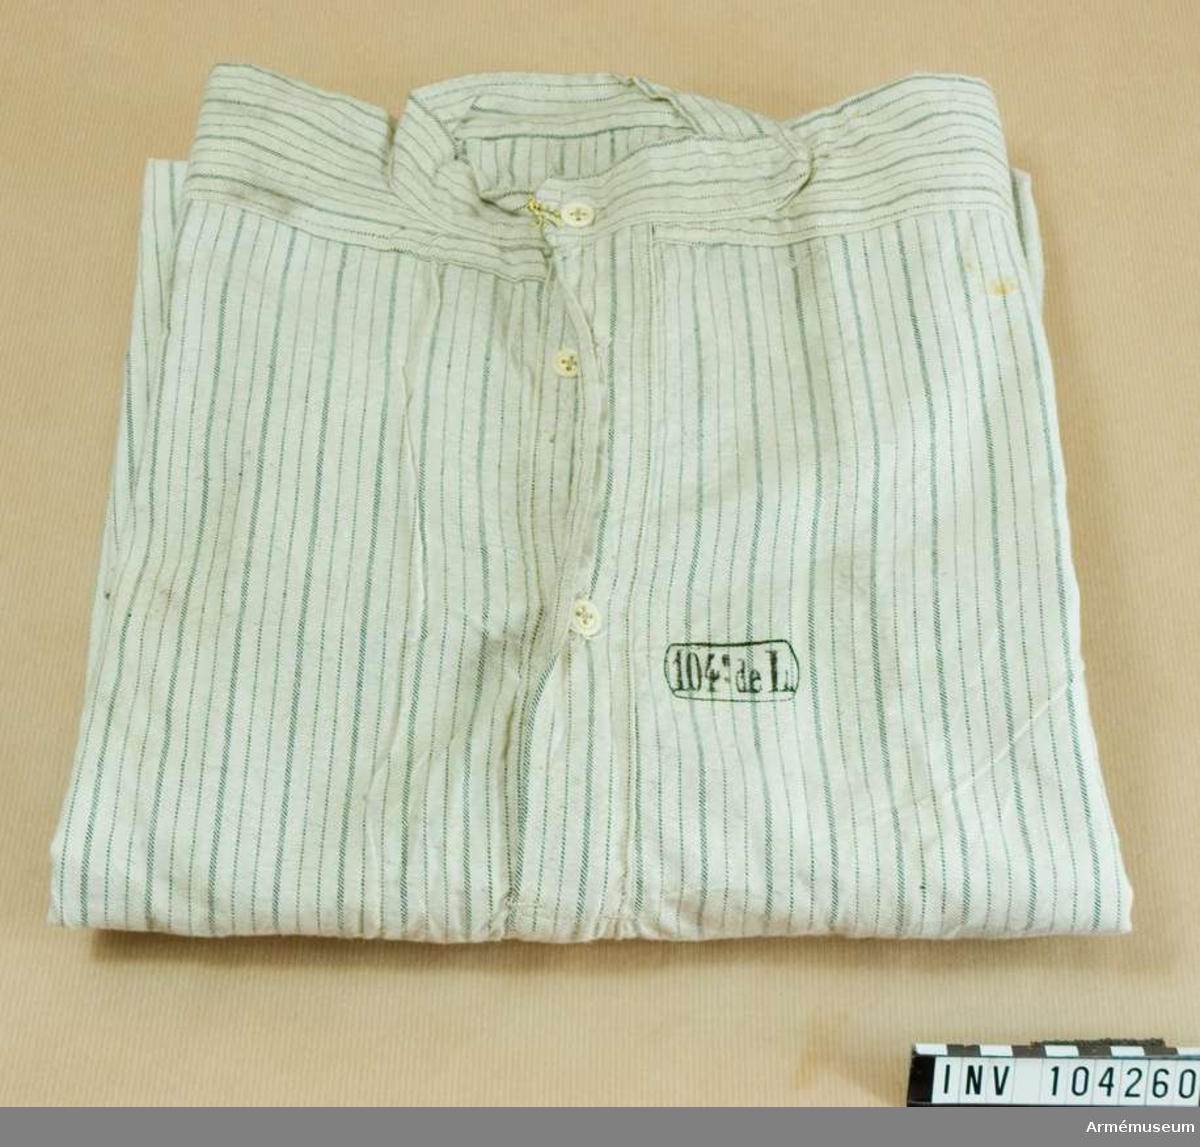 Skjorta av bomullstyg (vit med gråa ränder) med fast upprättstående krage och långa ärmar. På bröstets öppning två knappar, och på krage en; alla äro små, vita av ben. Likadana knappar, en å varje, på ärmuppslagens sprund. På skjortans framsida, en stämpel: "104de L" - 104 linjeinfanteriregementet. På skjortans baksida stämpel "30.11. 1910" - allt annat oläsligt.